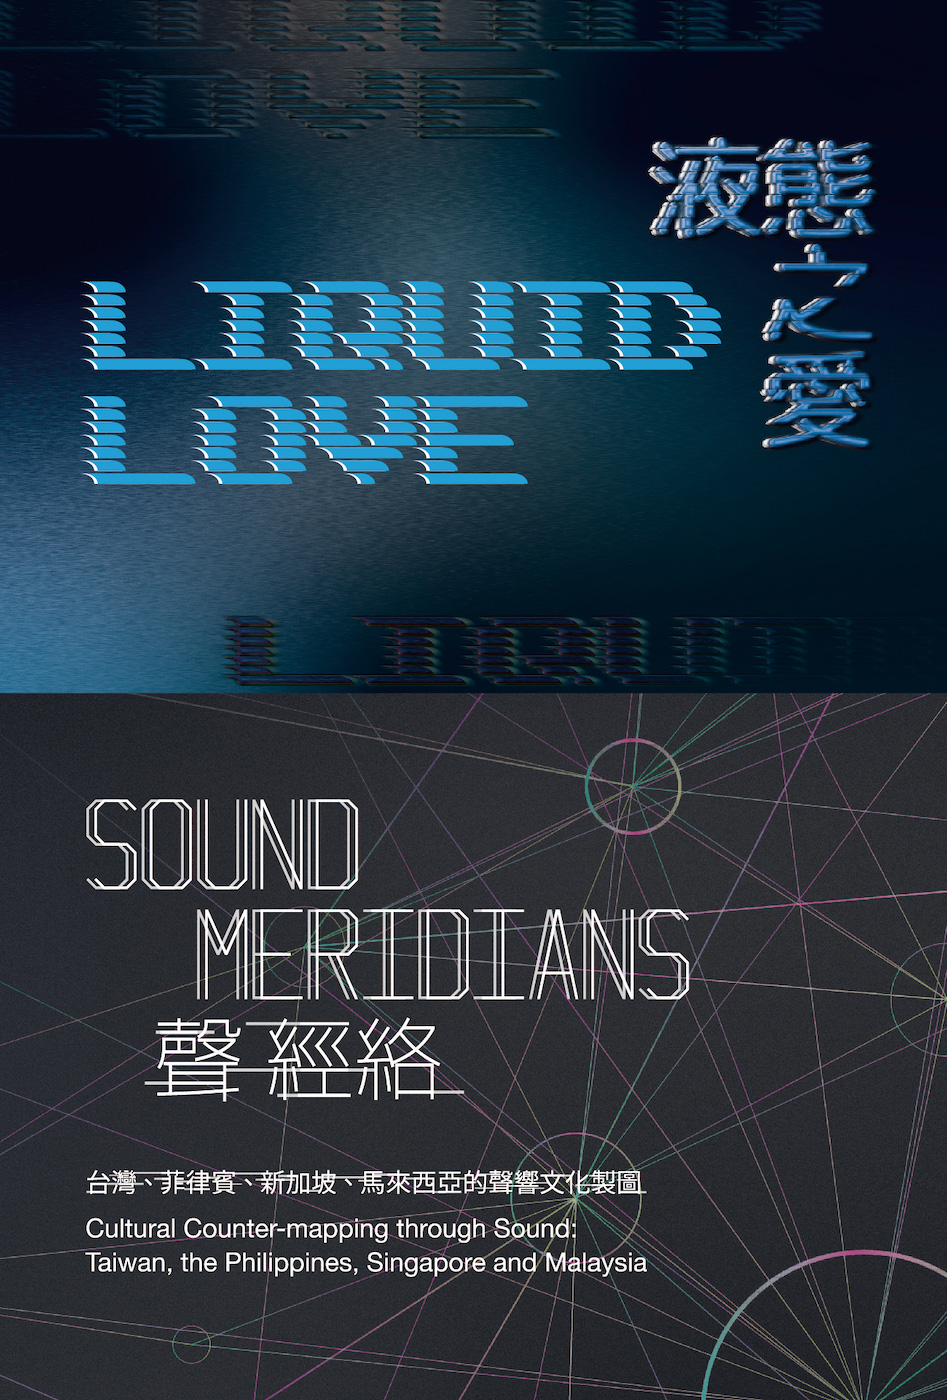 「液態之愛」及「聲經絡──台灣、菲律賓、新加坡、馬來西亞的聲響文化製圖」雙聯展